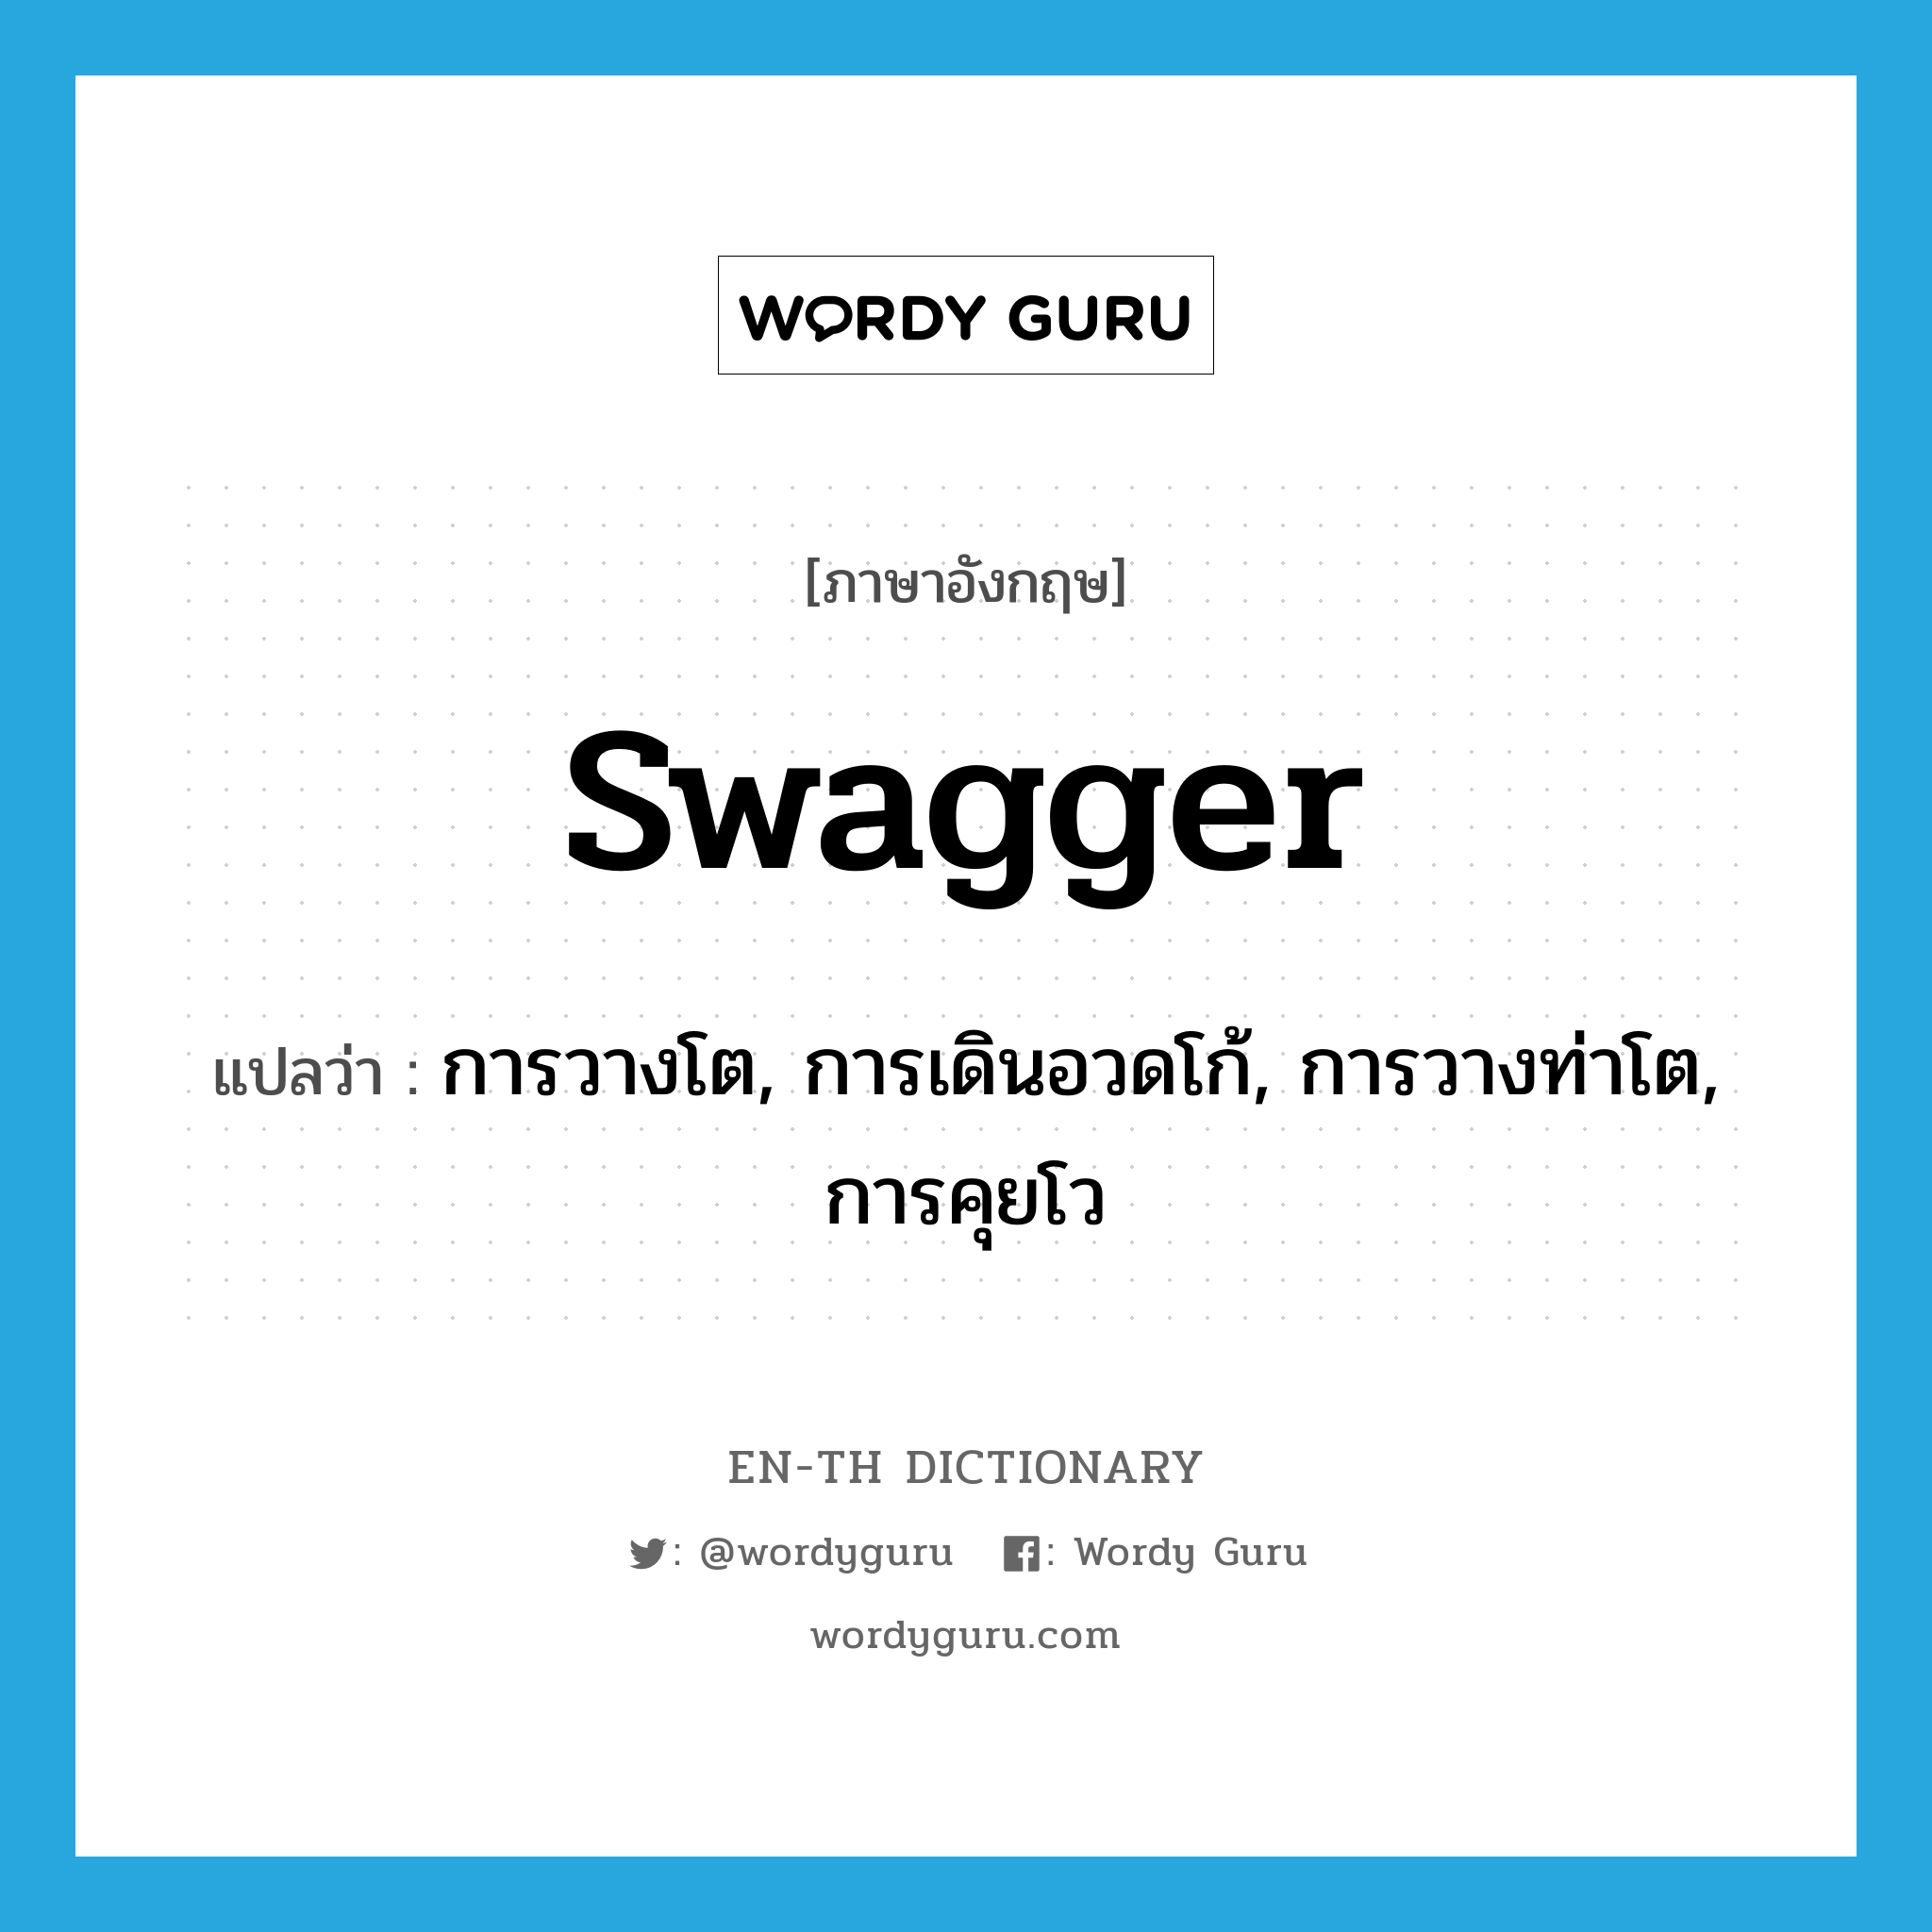 swagger แปลว่า?, คำศัพท์ภาษาอังกฤษ swagger แปลว่า การวางโต, การเดินอวดโก้, การวางท่าโต, การคุยโว ประเภท N หมวด N